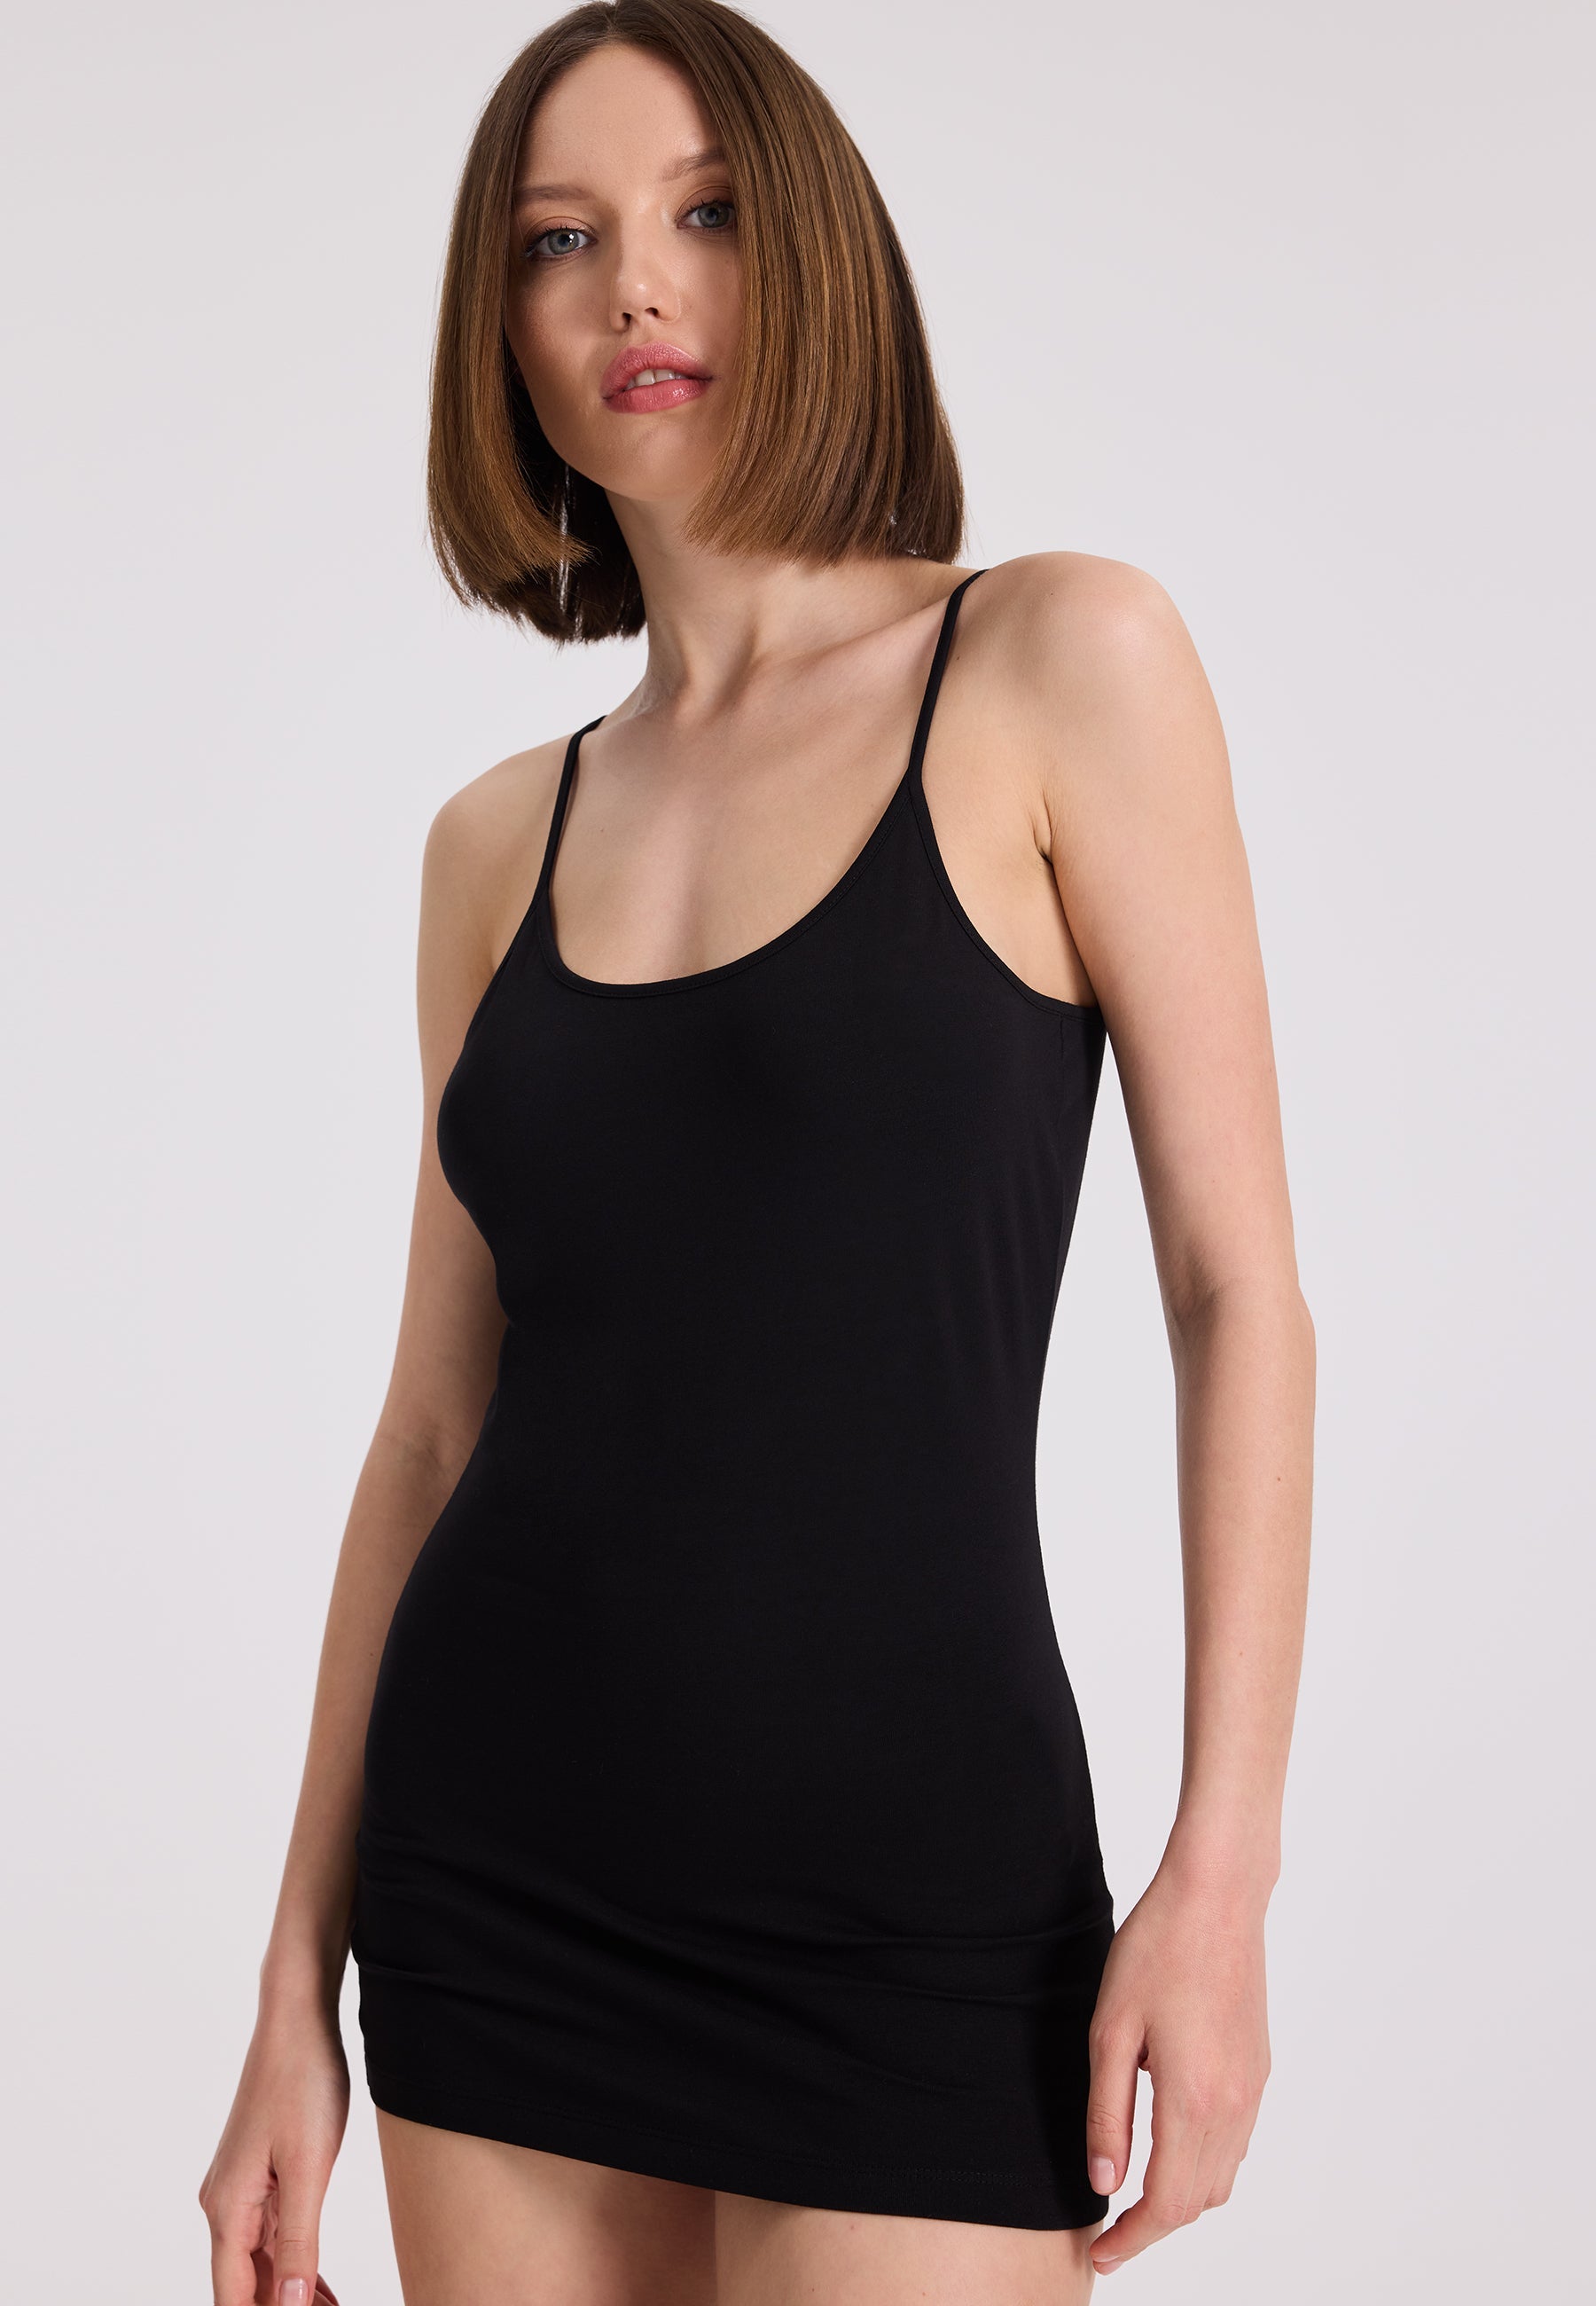 3’lü Ten Rengi, Beyaz, Siyah Pamuk Elastan Karışımı İp Askılı Kadın Atlet OLIVIA SINGLET - Underwear - Westmark London EU(TR) Store Organik Pamuklu Sürdürülebilir Moda